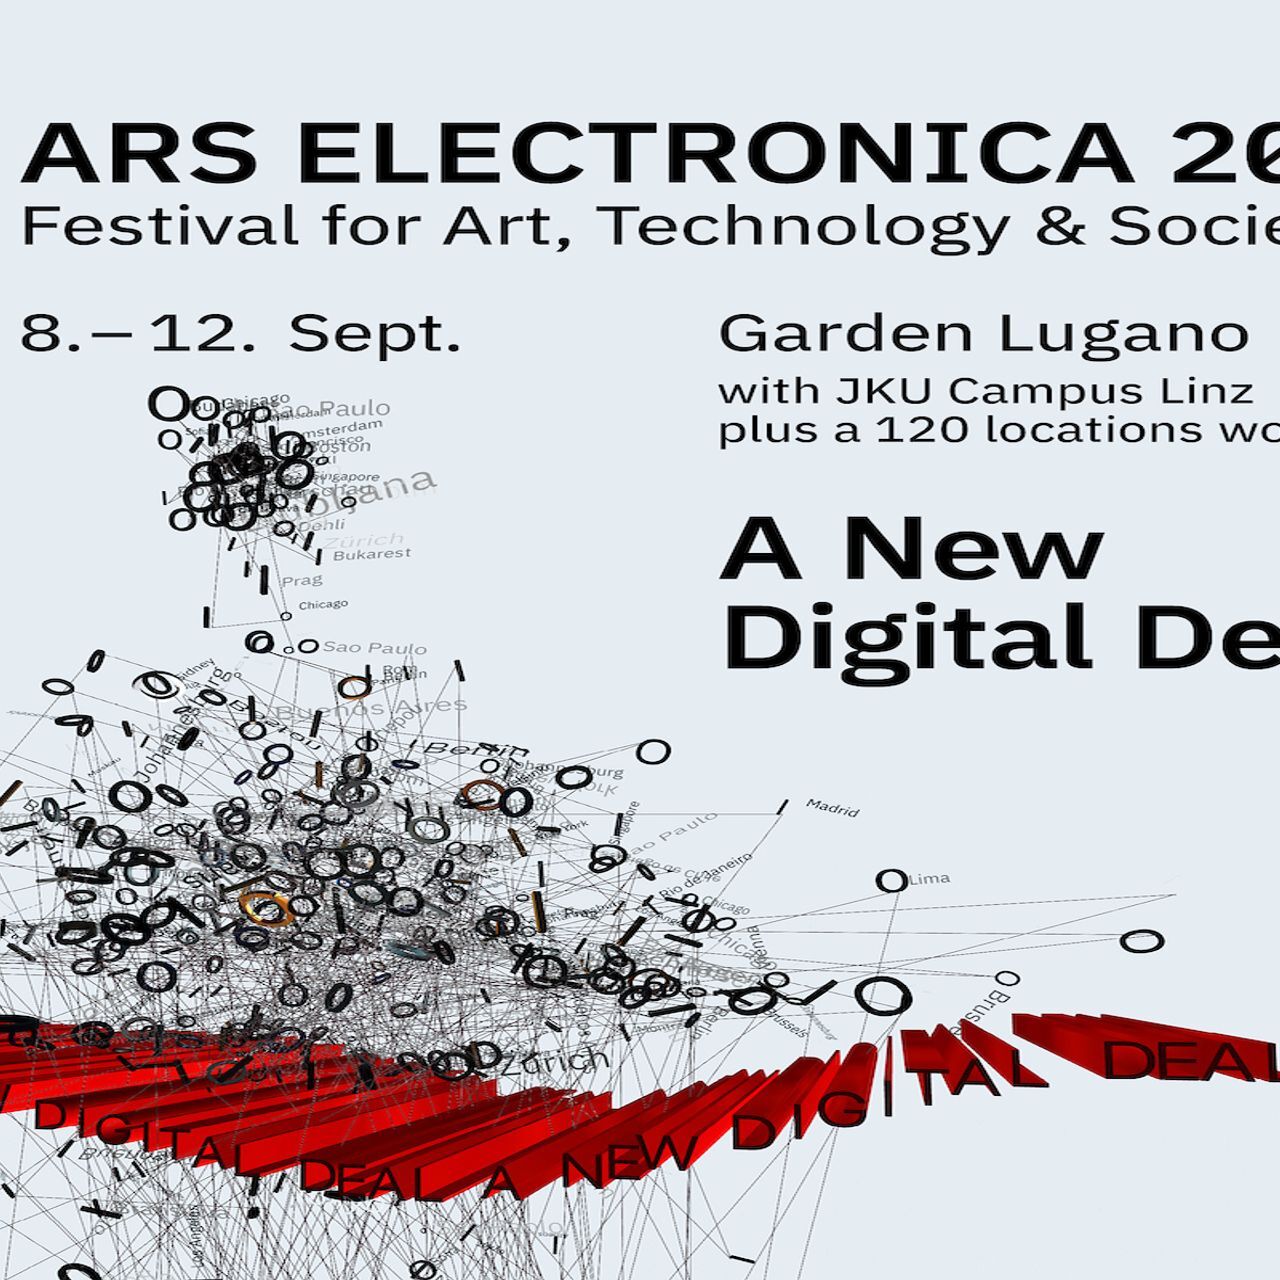 9 年 12 月 2021 日至 XNUMX 日在卢加诺首次亮相的电子艺术节海报